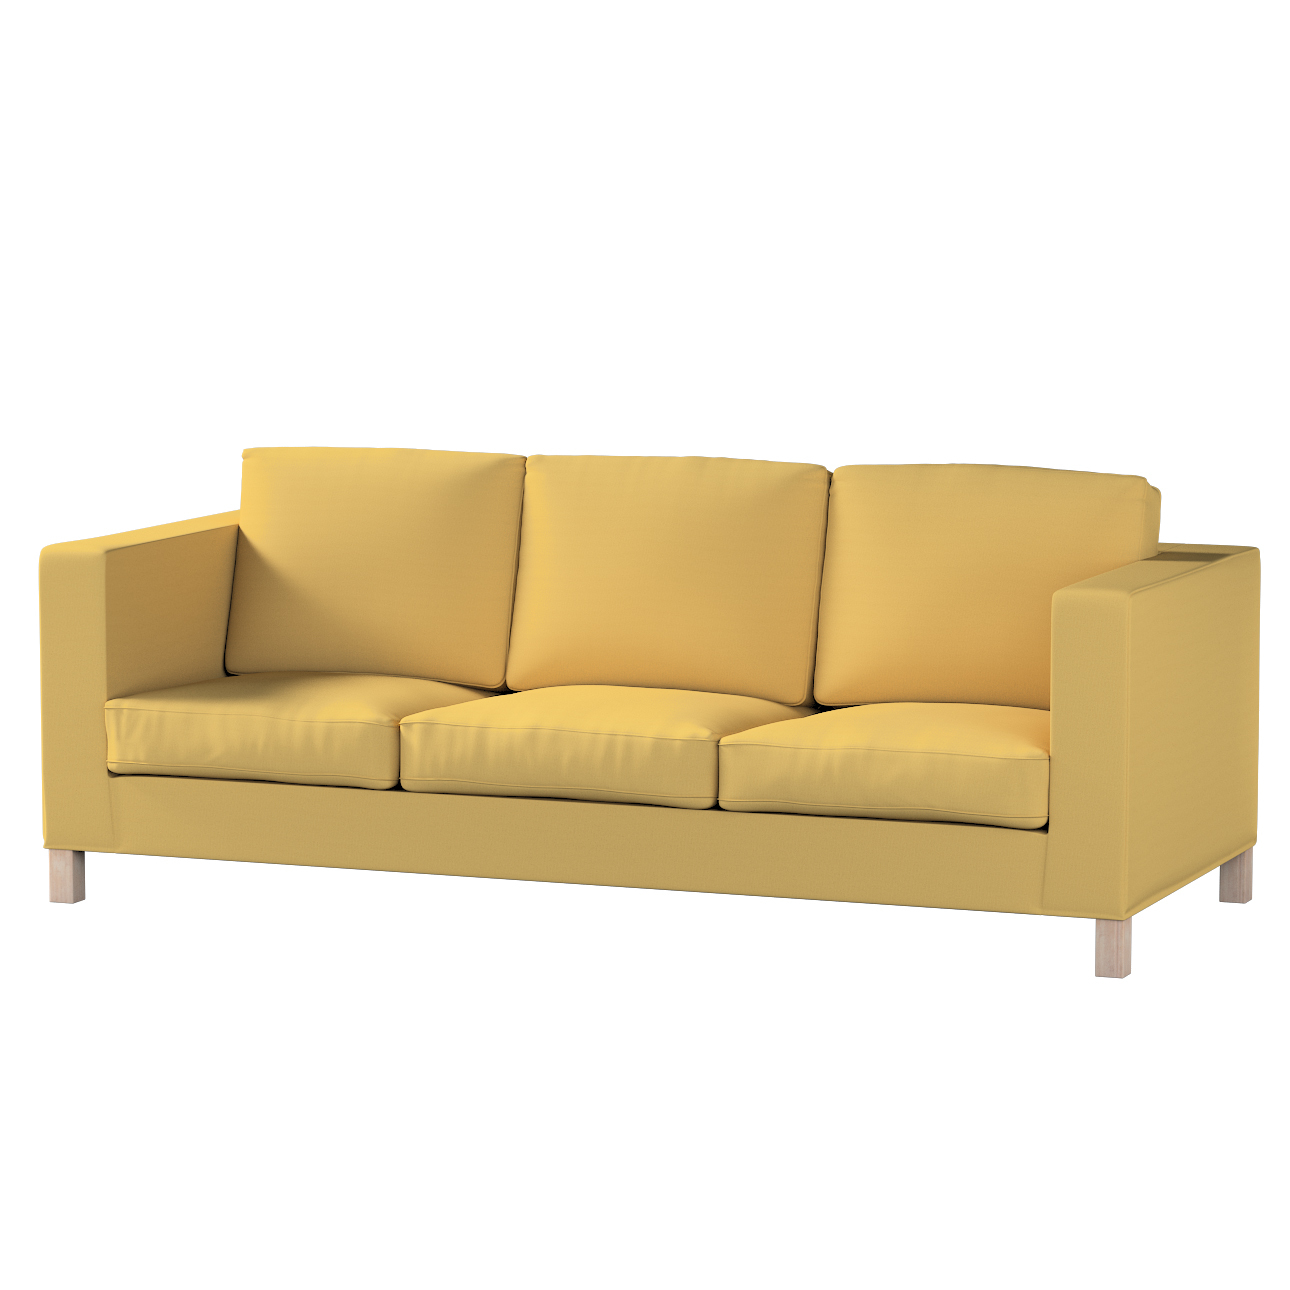 Bezug für Karlanda 3-Sitzer Sofa nicht ausklappbar, kurz, chiffongelb, Bezu günstig online kaufen